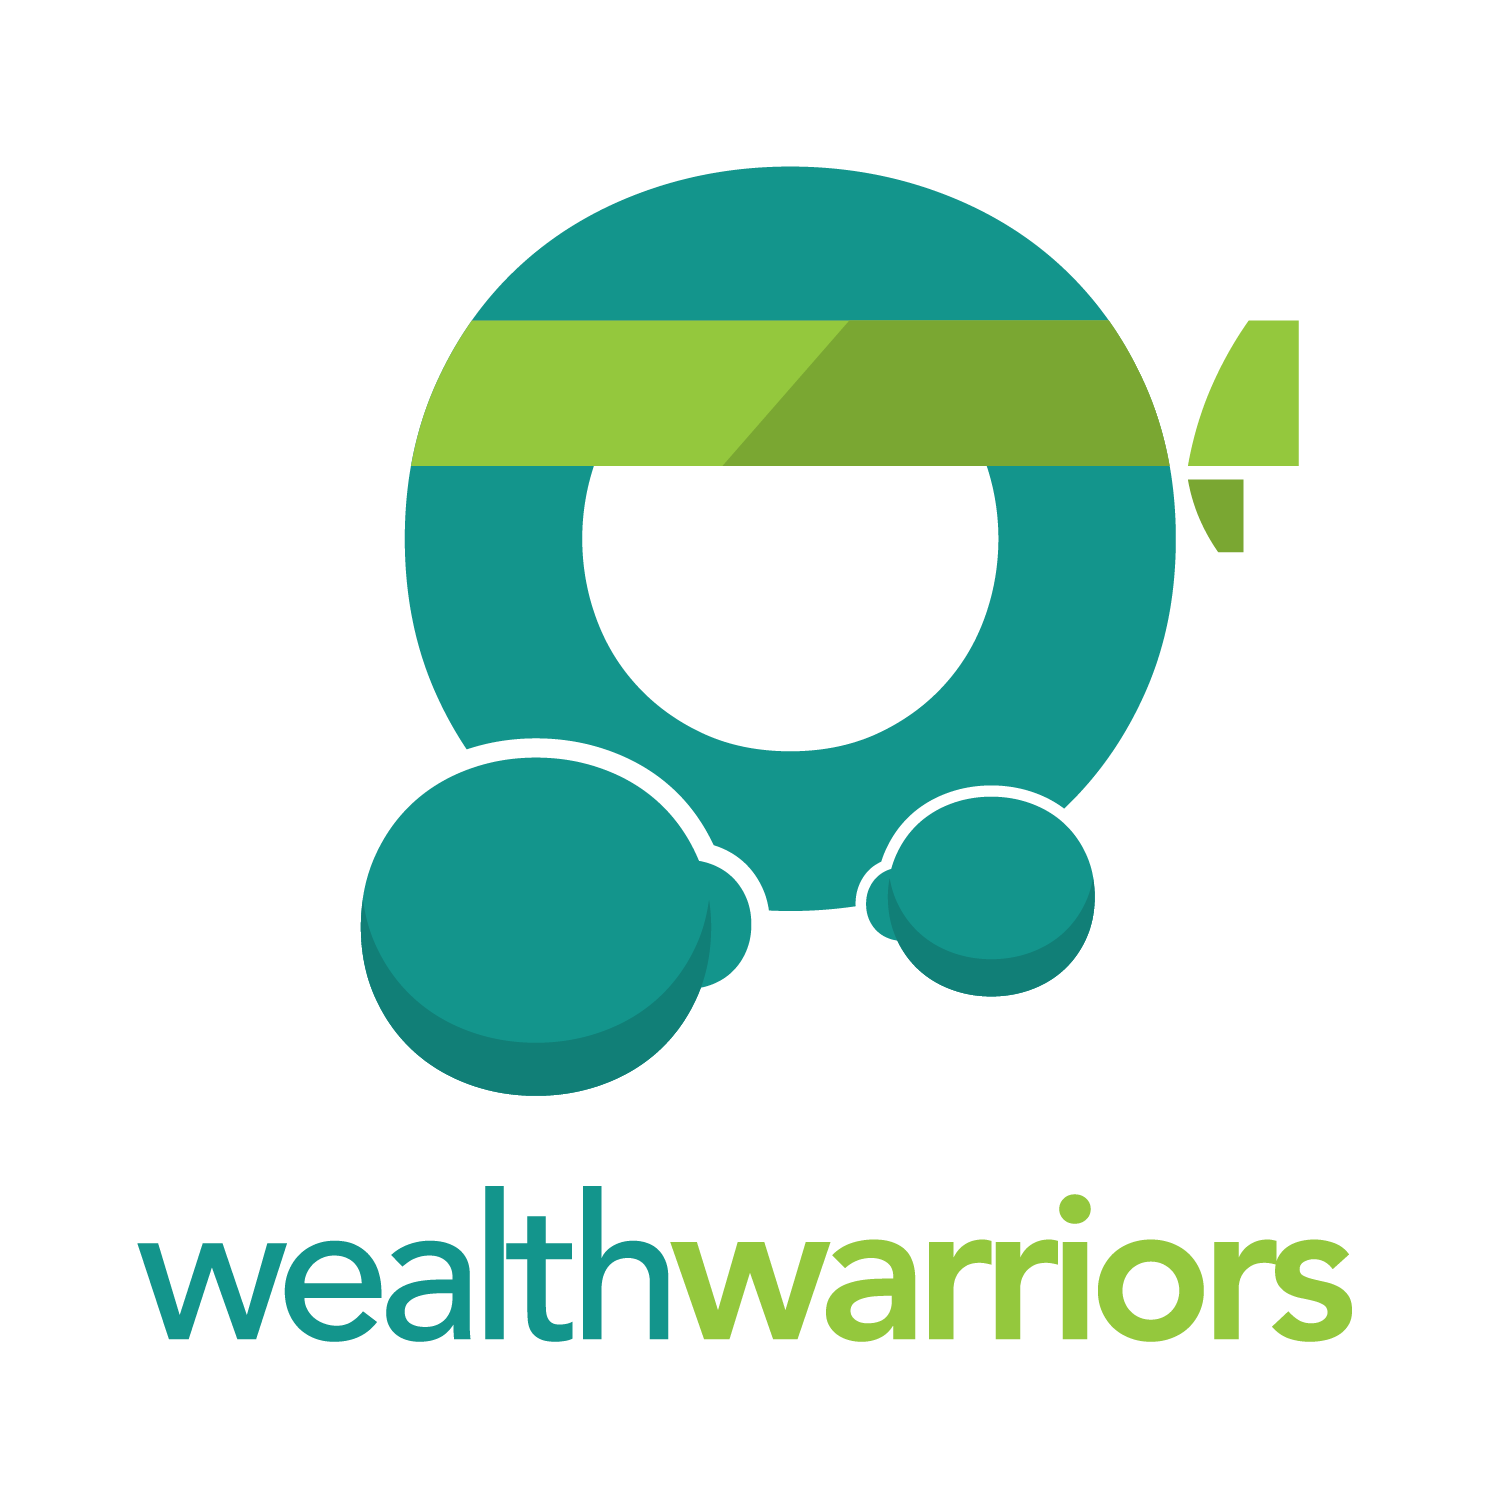 Wealth Warrior Youth Club logo